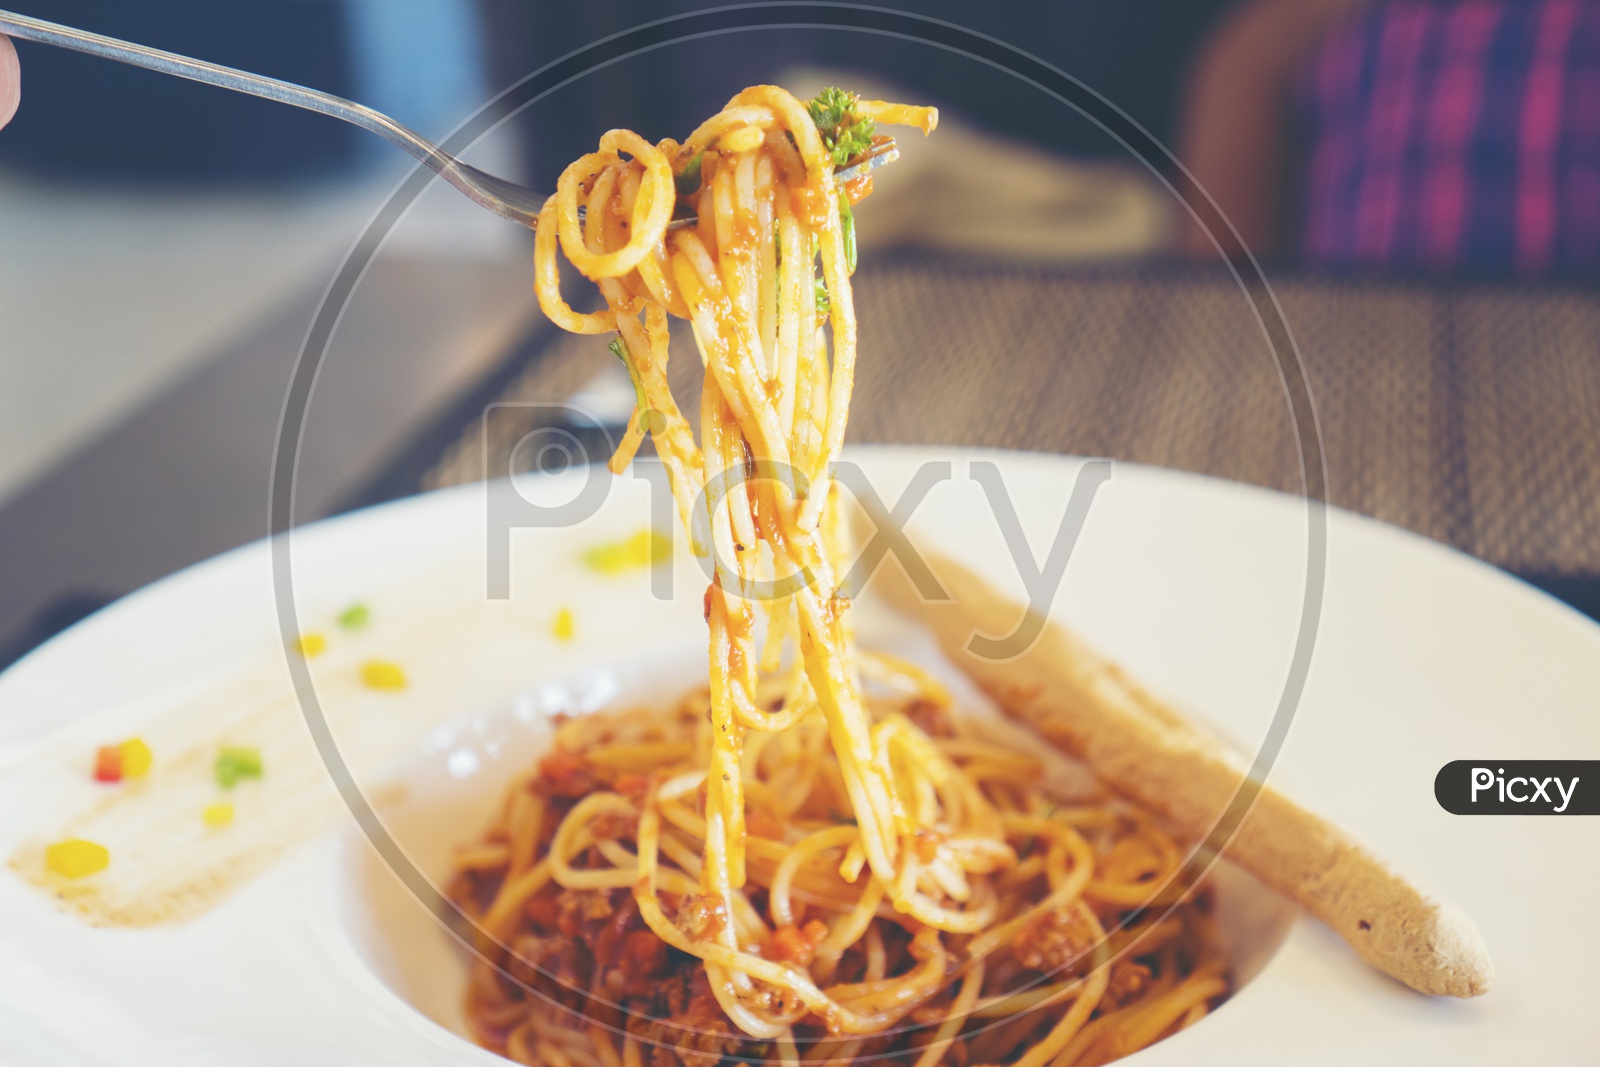 Spaghetti al sugo pomodoro basilico picked with a fork